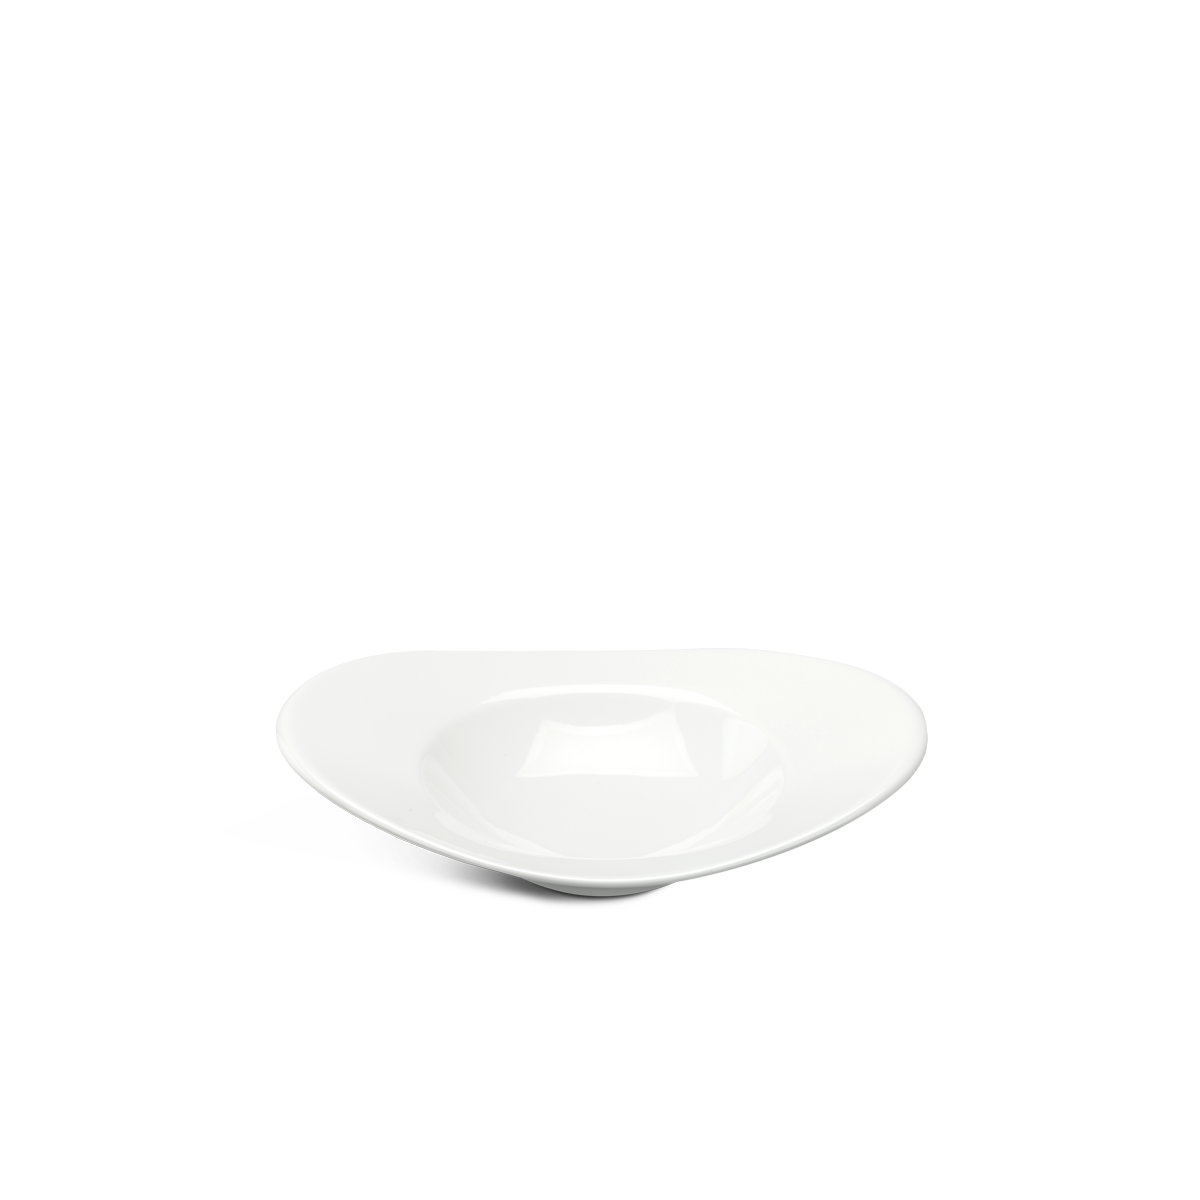 Tô oval vành 26 cm - Misc Assortment Lys - Trắng Ngà